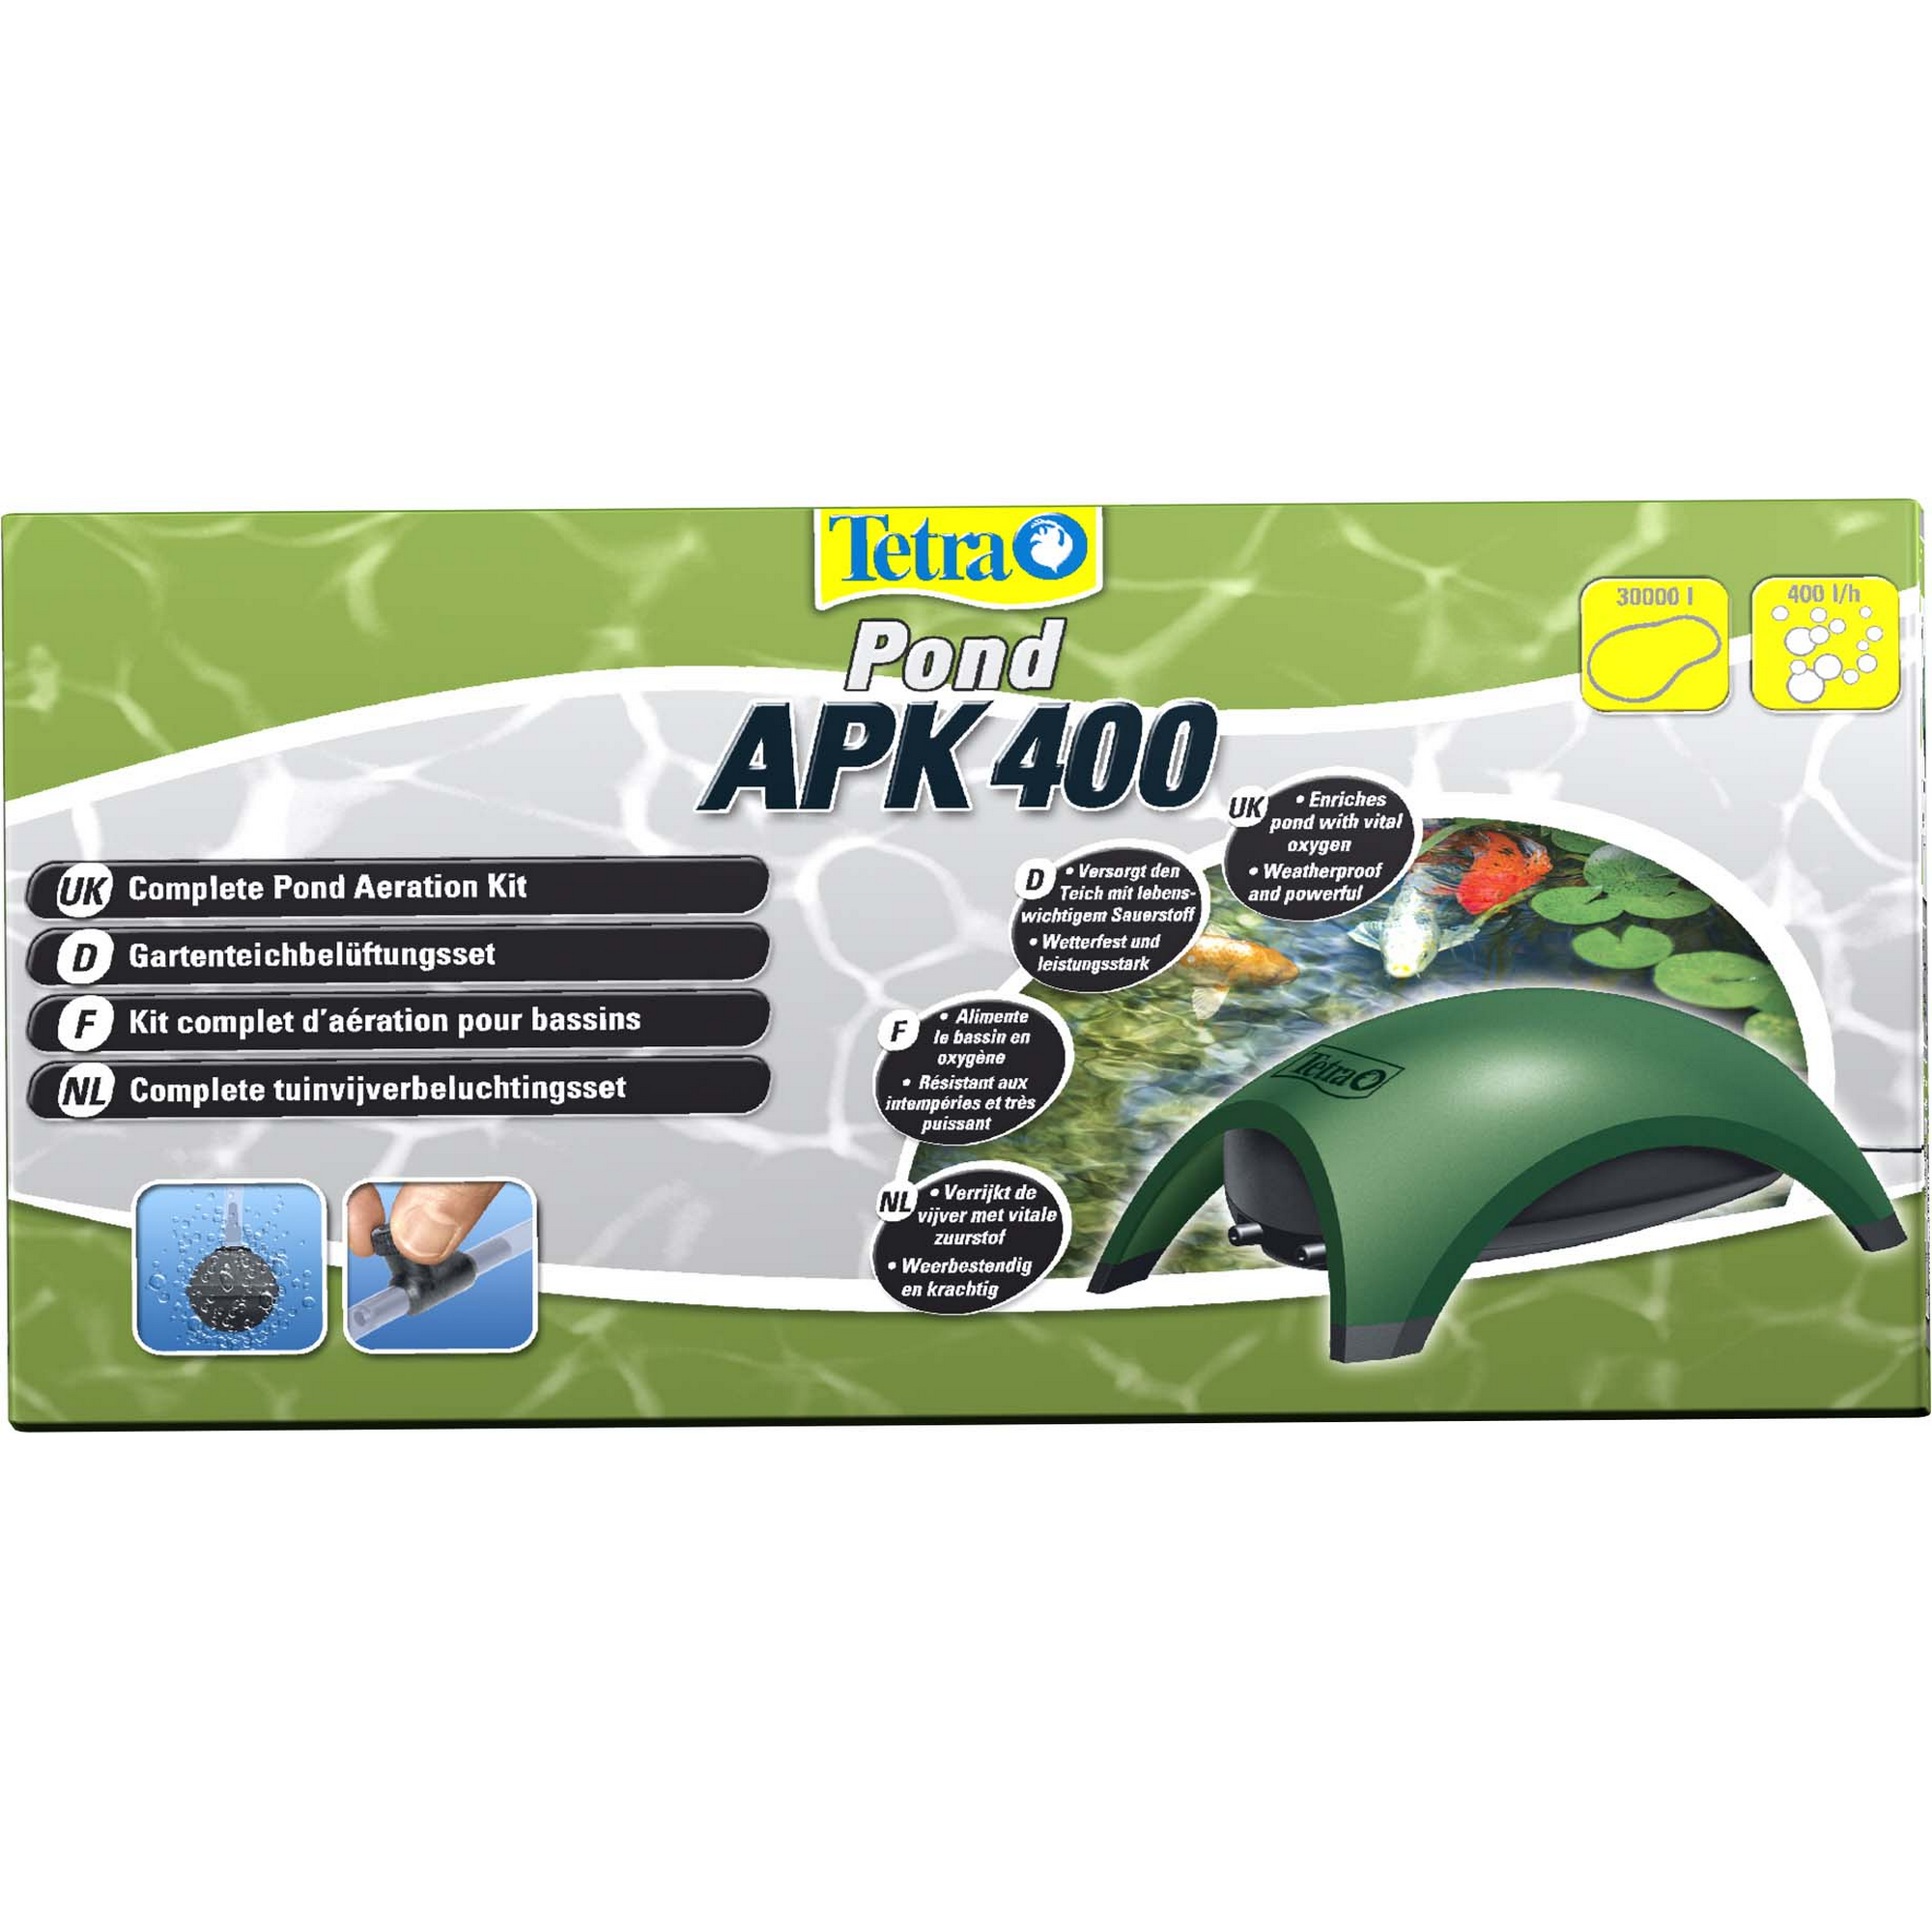 Gartenteichbelüftungsset "Pond APK 400" 4,5 W + product picture